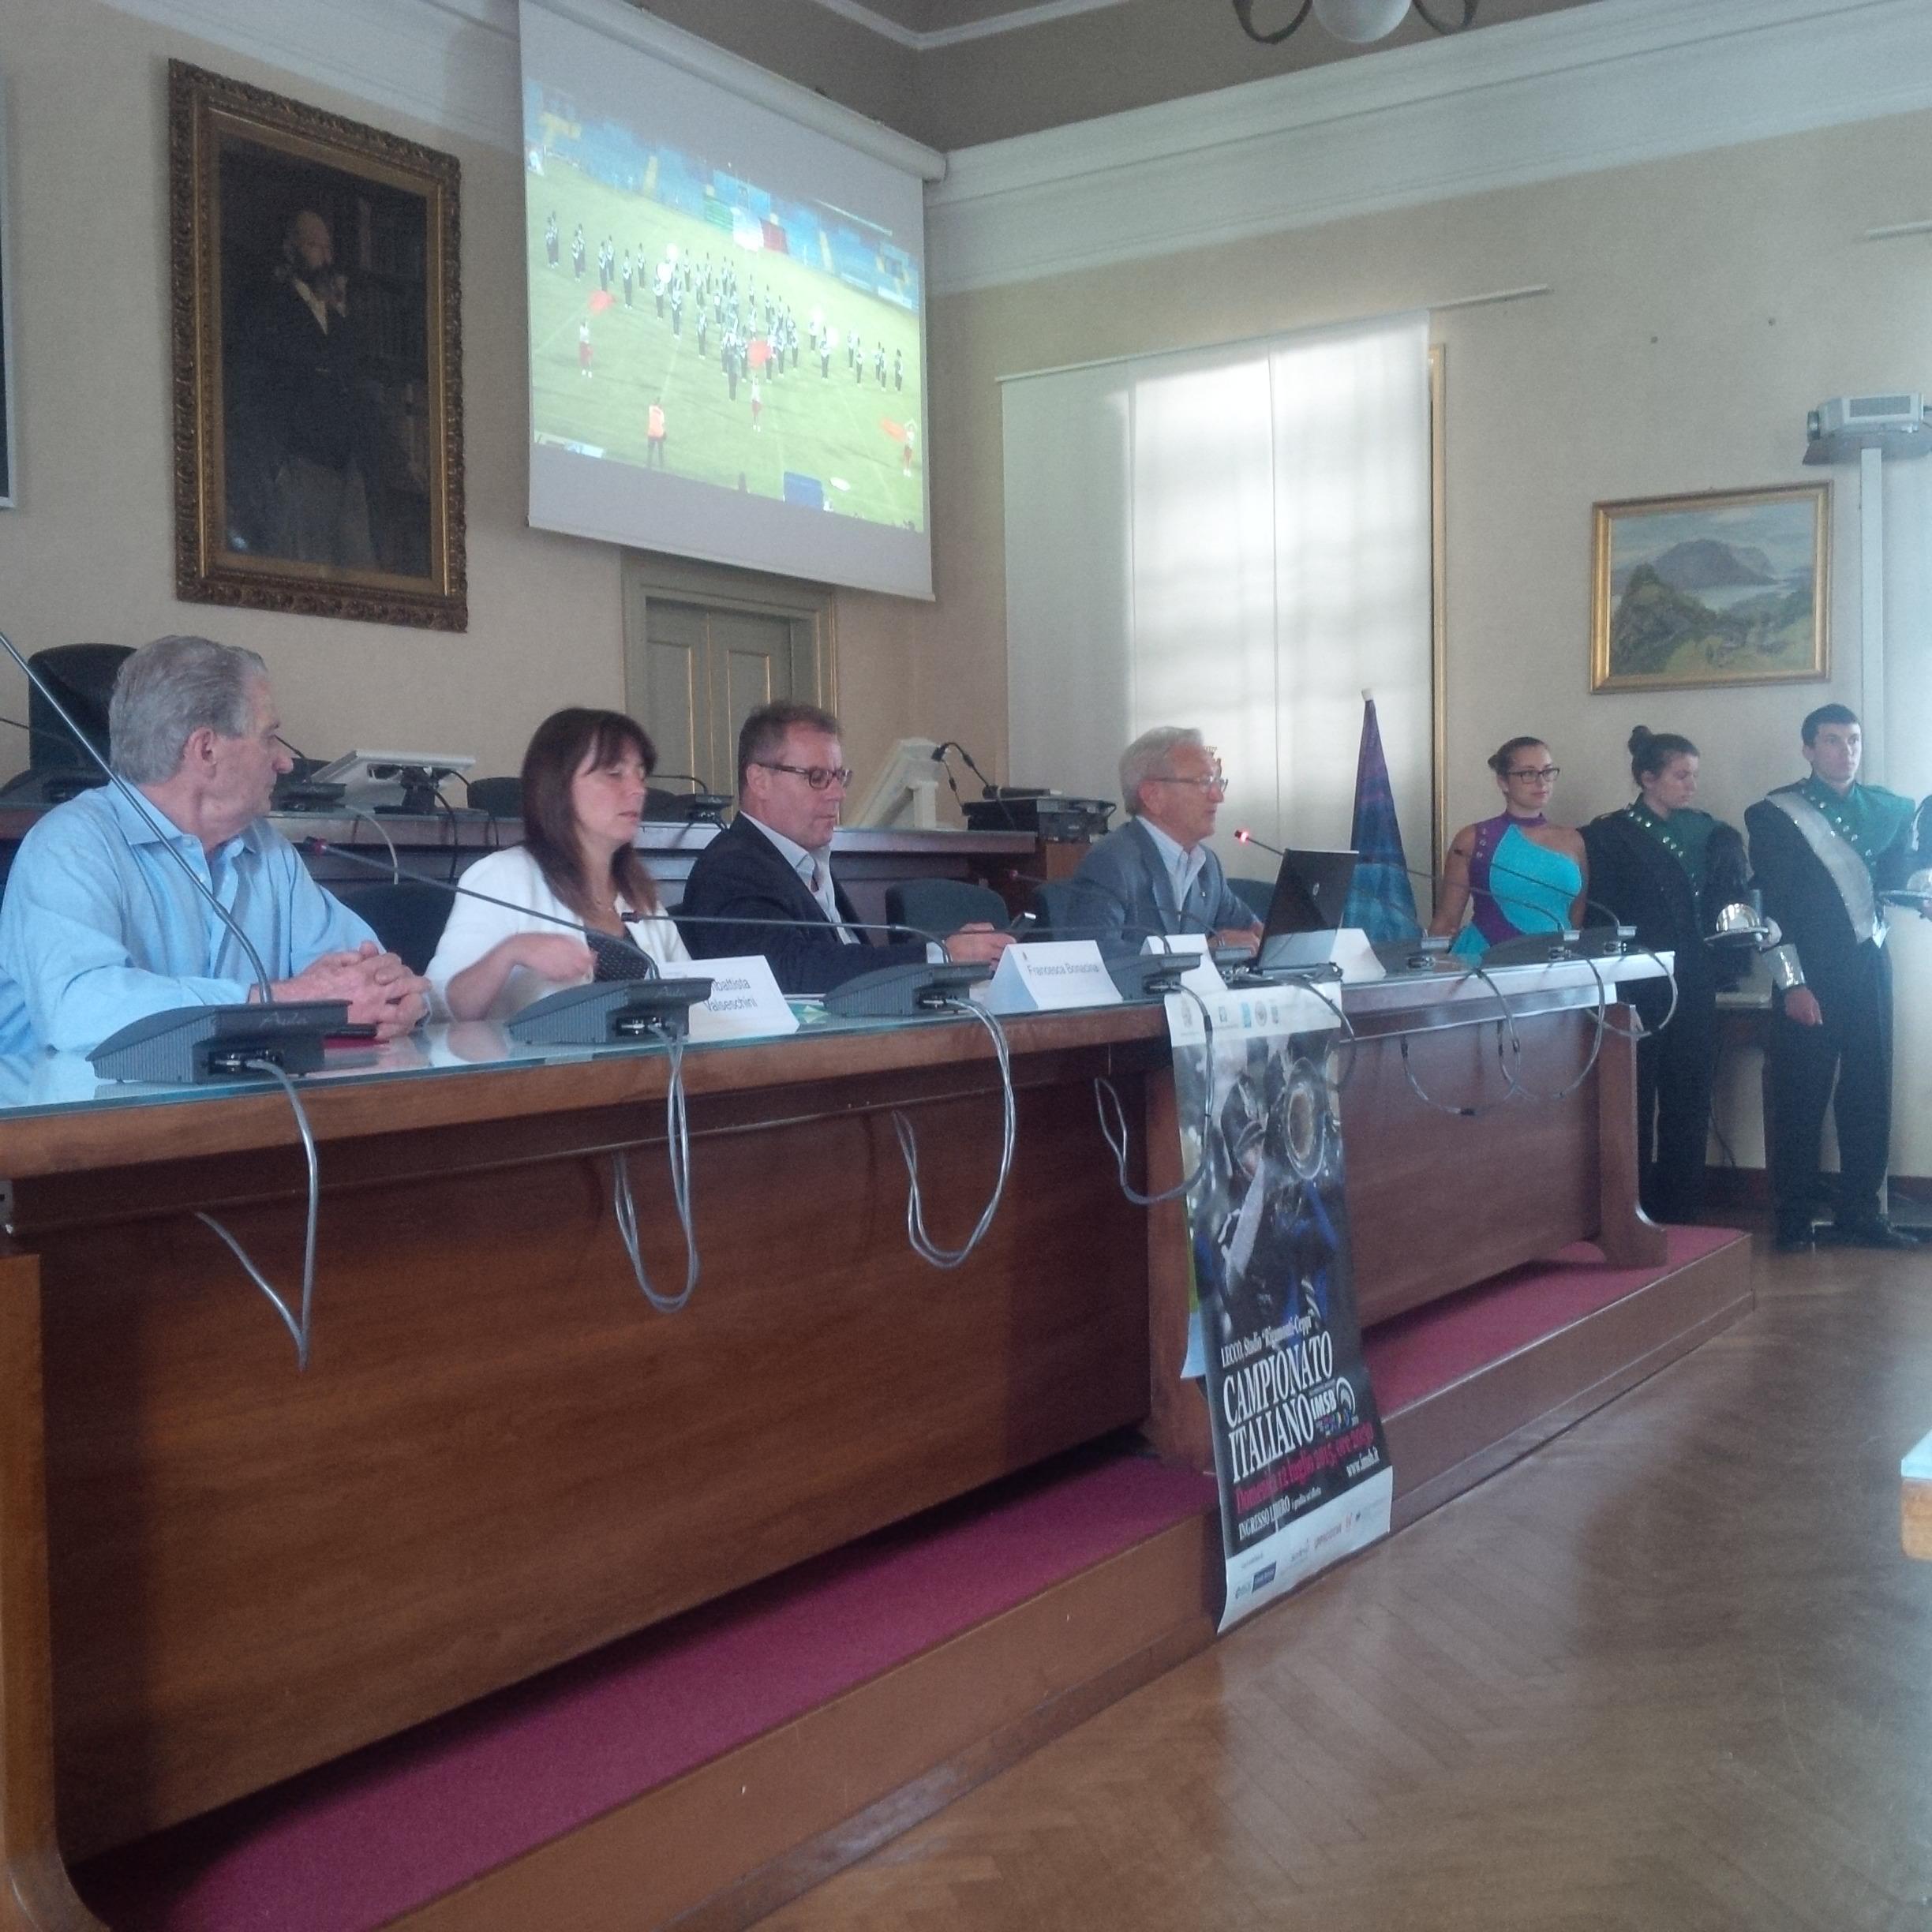 Campionato 2015: conferenza stampa a Lecco